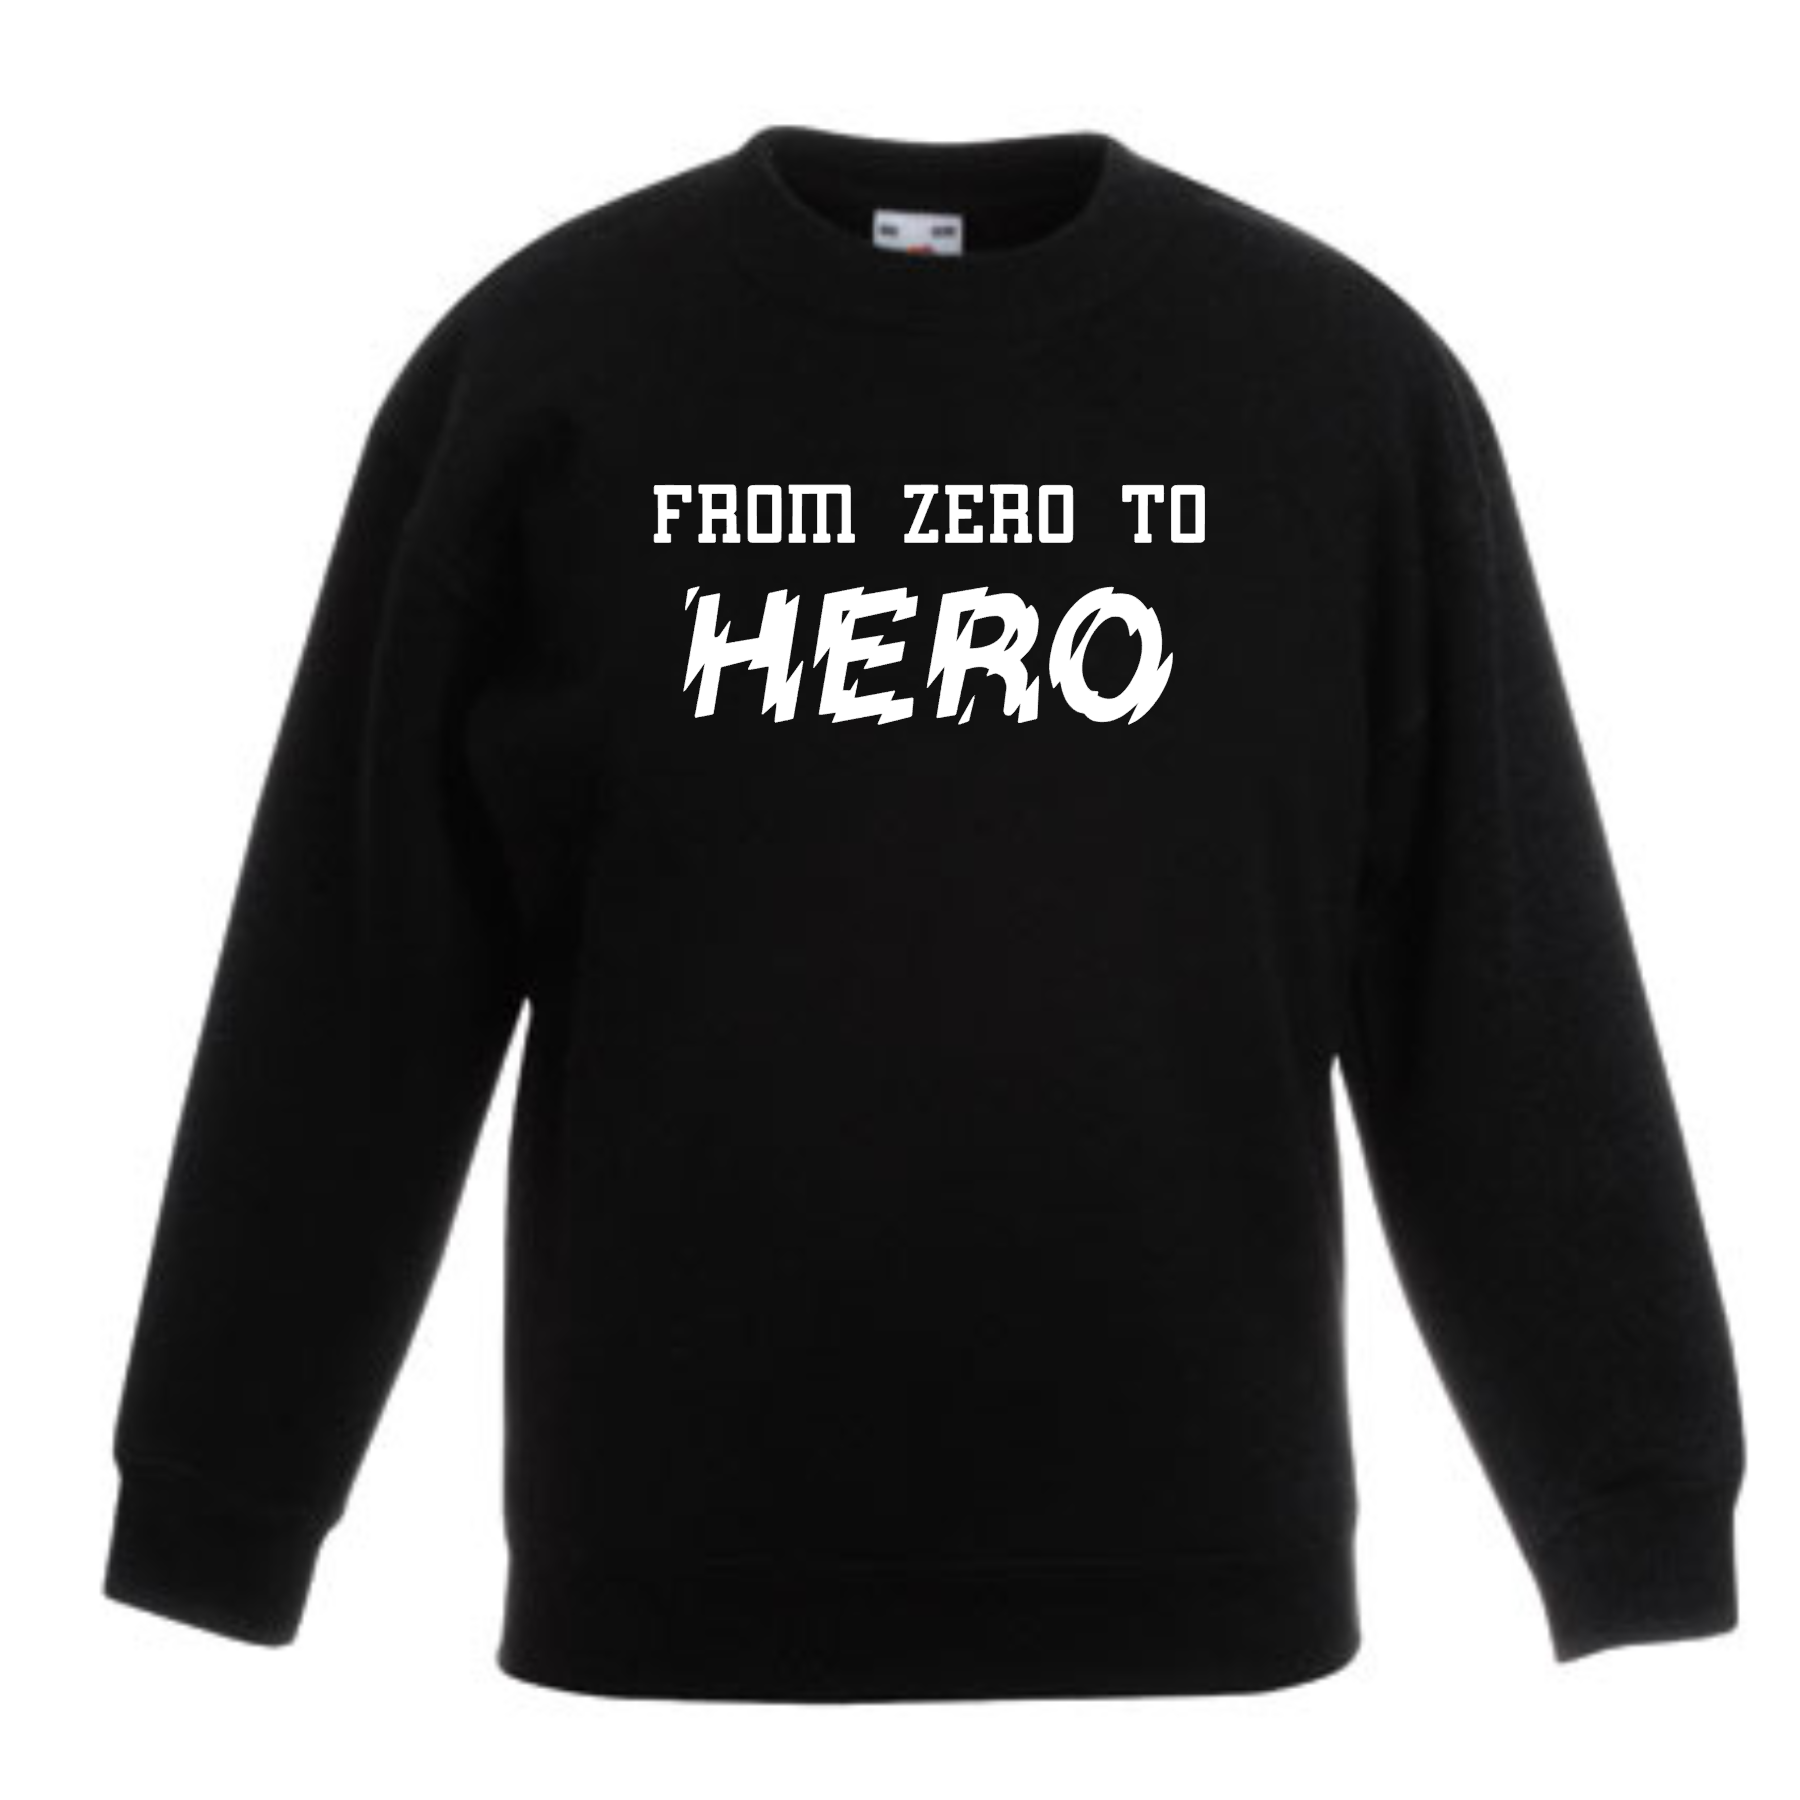 Kids sweater – From zero to hero